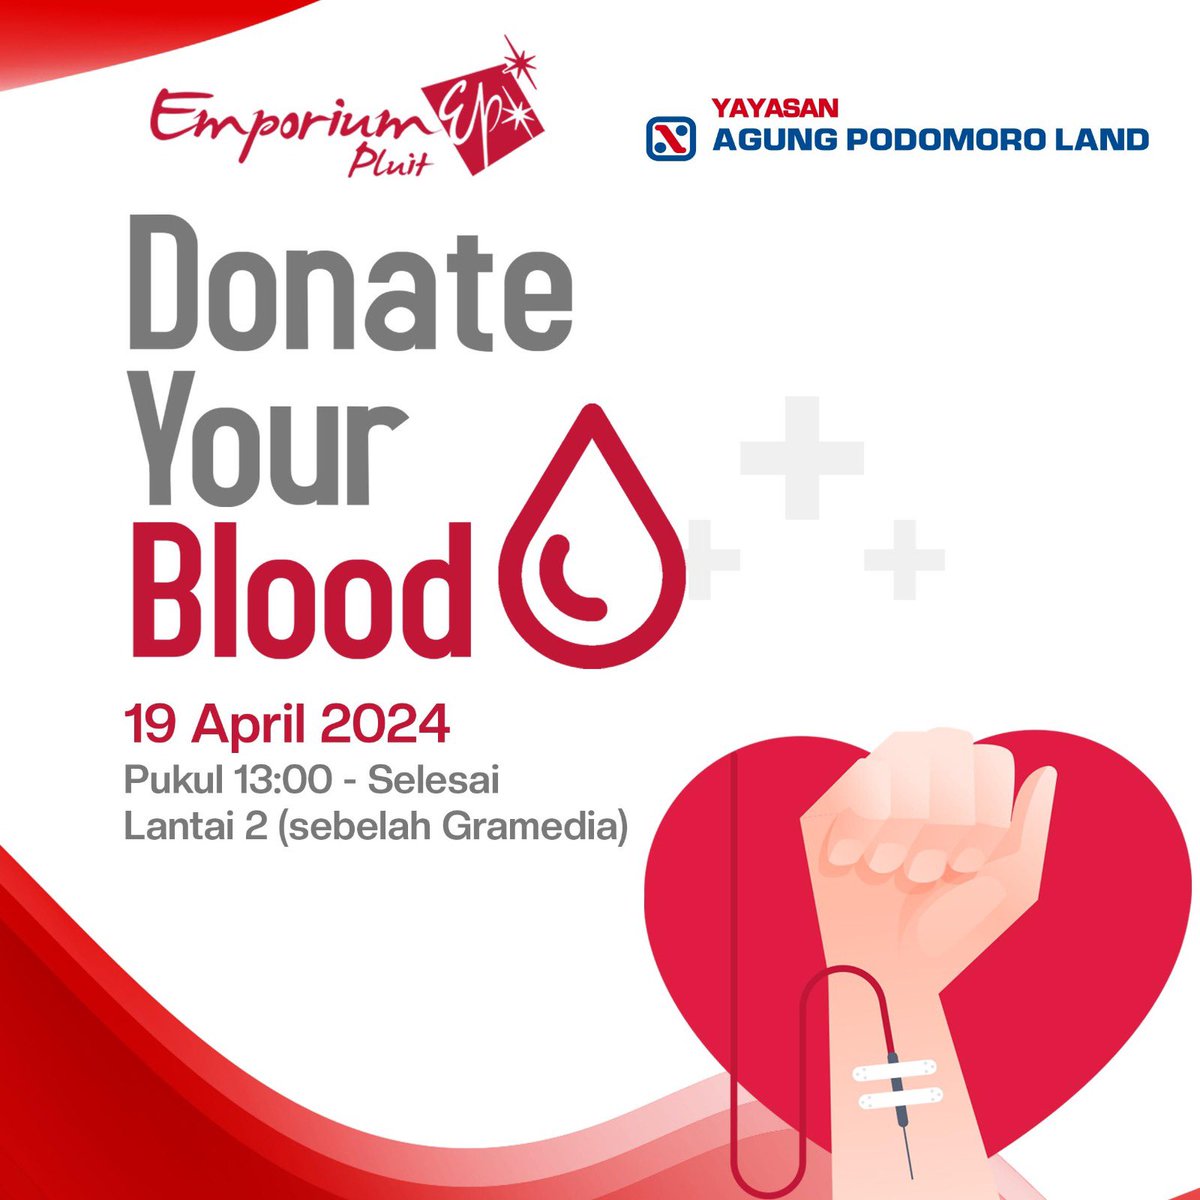 Di bulan April ini, Emporium Pluit Mall bekerjasama dengan Palang Merah Indonesia (PMI), dalam mengadakan kegiatan sosial Donor Darah, DONATE YOUR BLOOD. Ayo sumbangkan darahmu bagi mereka yang membutuhkan pada: 19 APRIL 2024 Pukul 13.00 - selesai Lantai 2 (sebelah Gramedia)